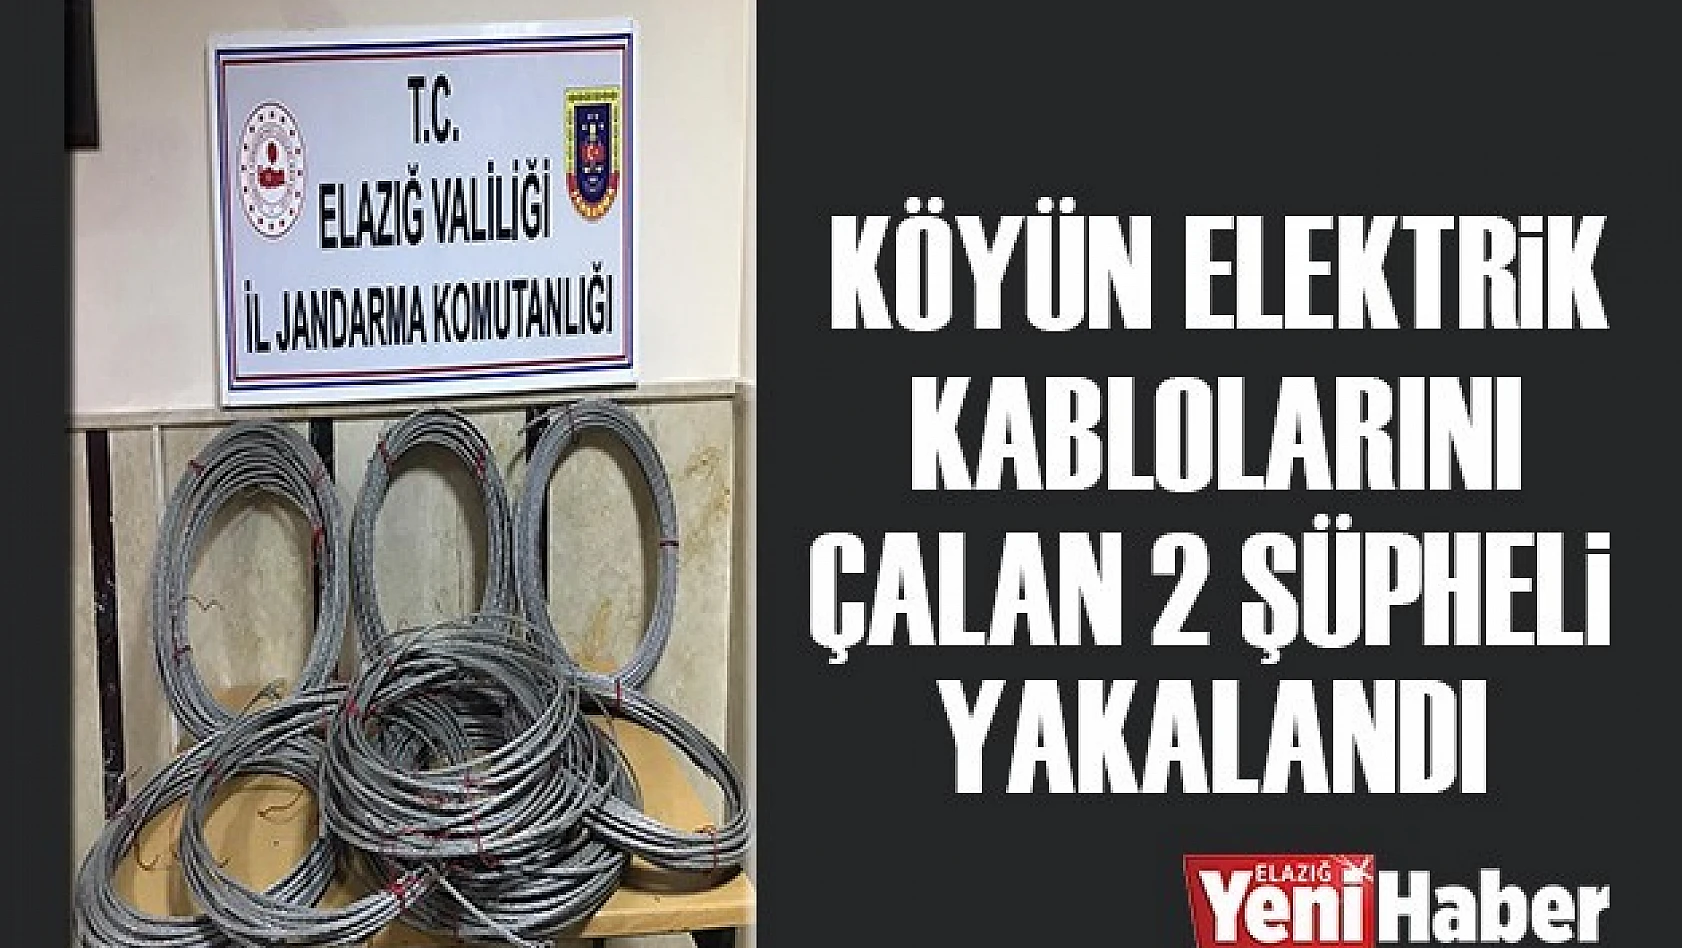 Köyün Elektrik Kablolarını Çalan 2 Şüpheli Yakalandı